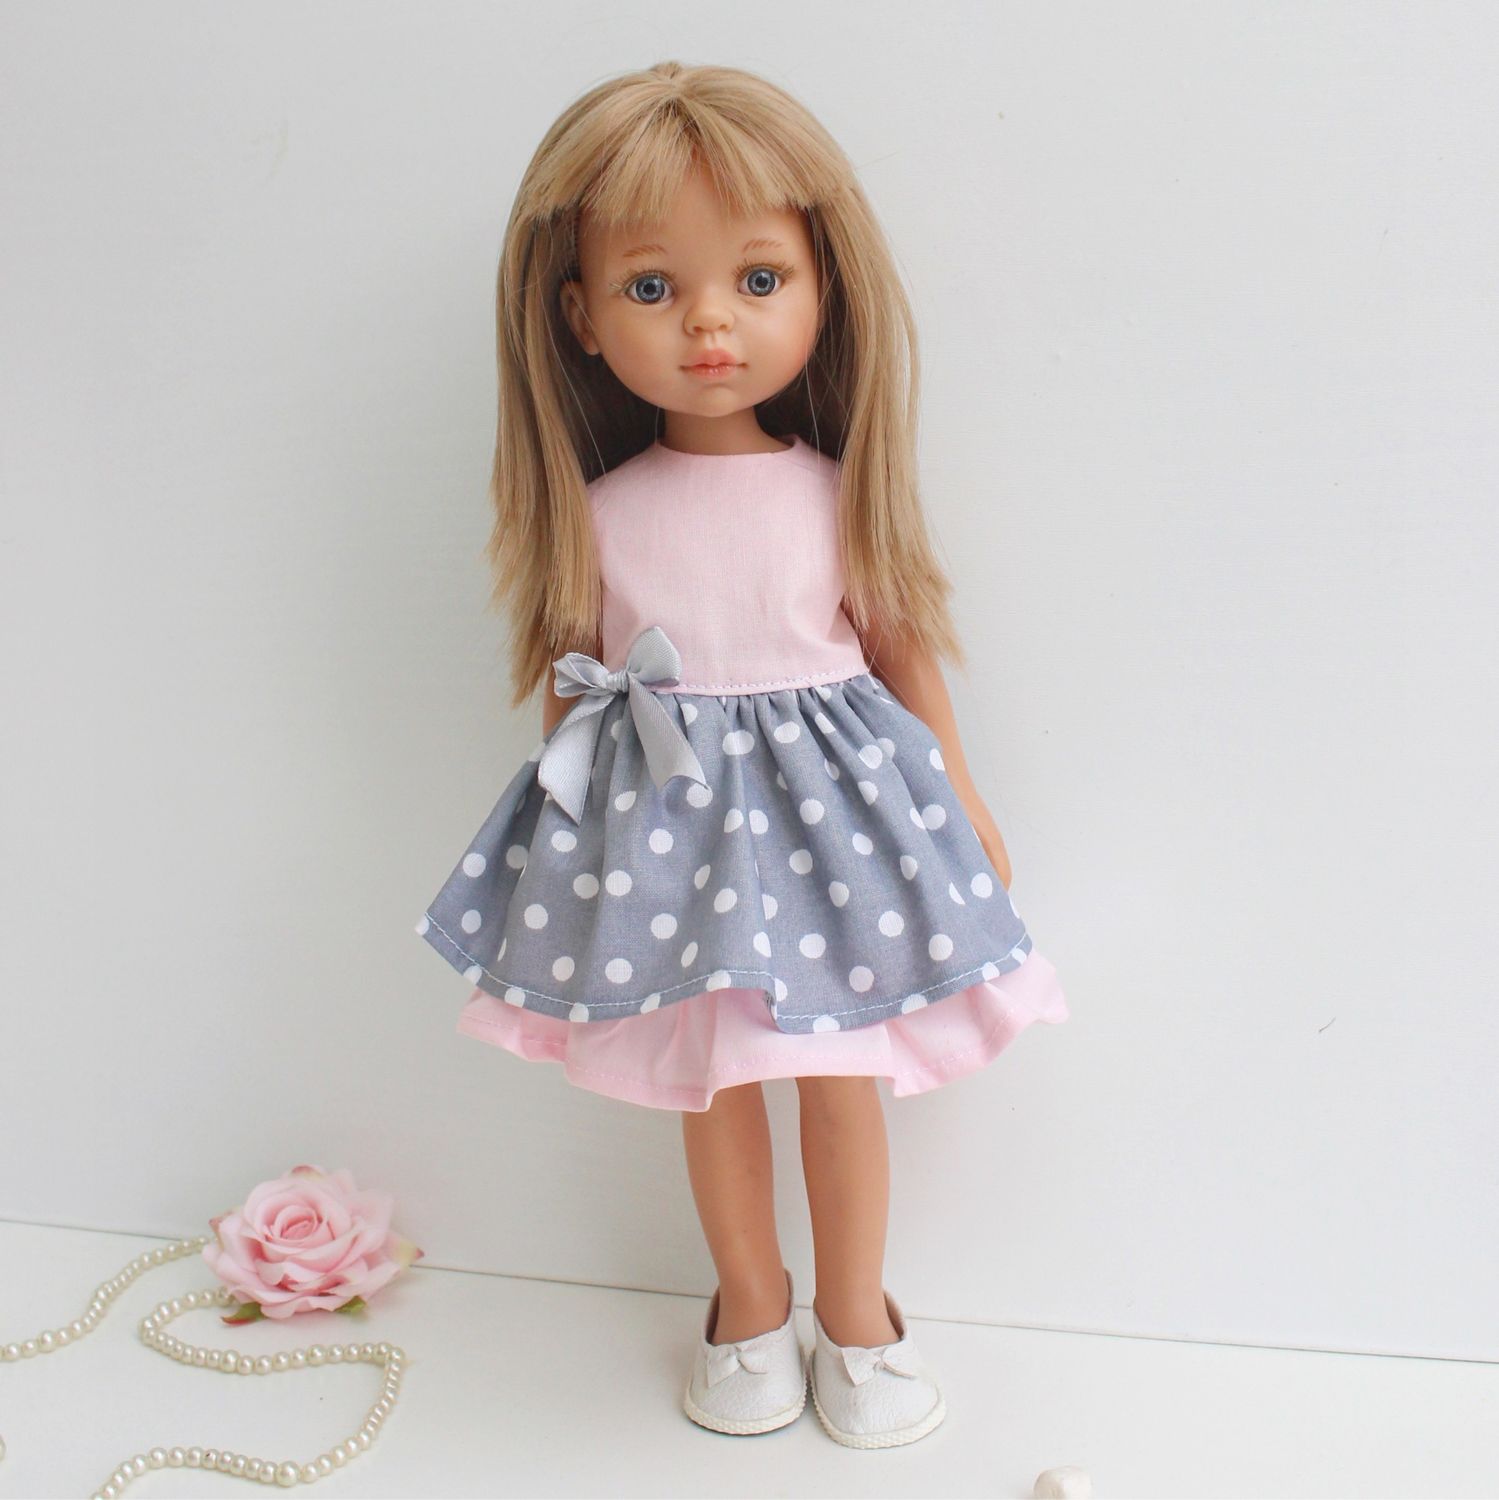 Одежда для кукол 32 см. Кукла Паола Рейна. Paola Reina куклы Паола. Одежда для кукол Паола Рейна. Платье для куклы Паола Рейна.